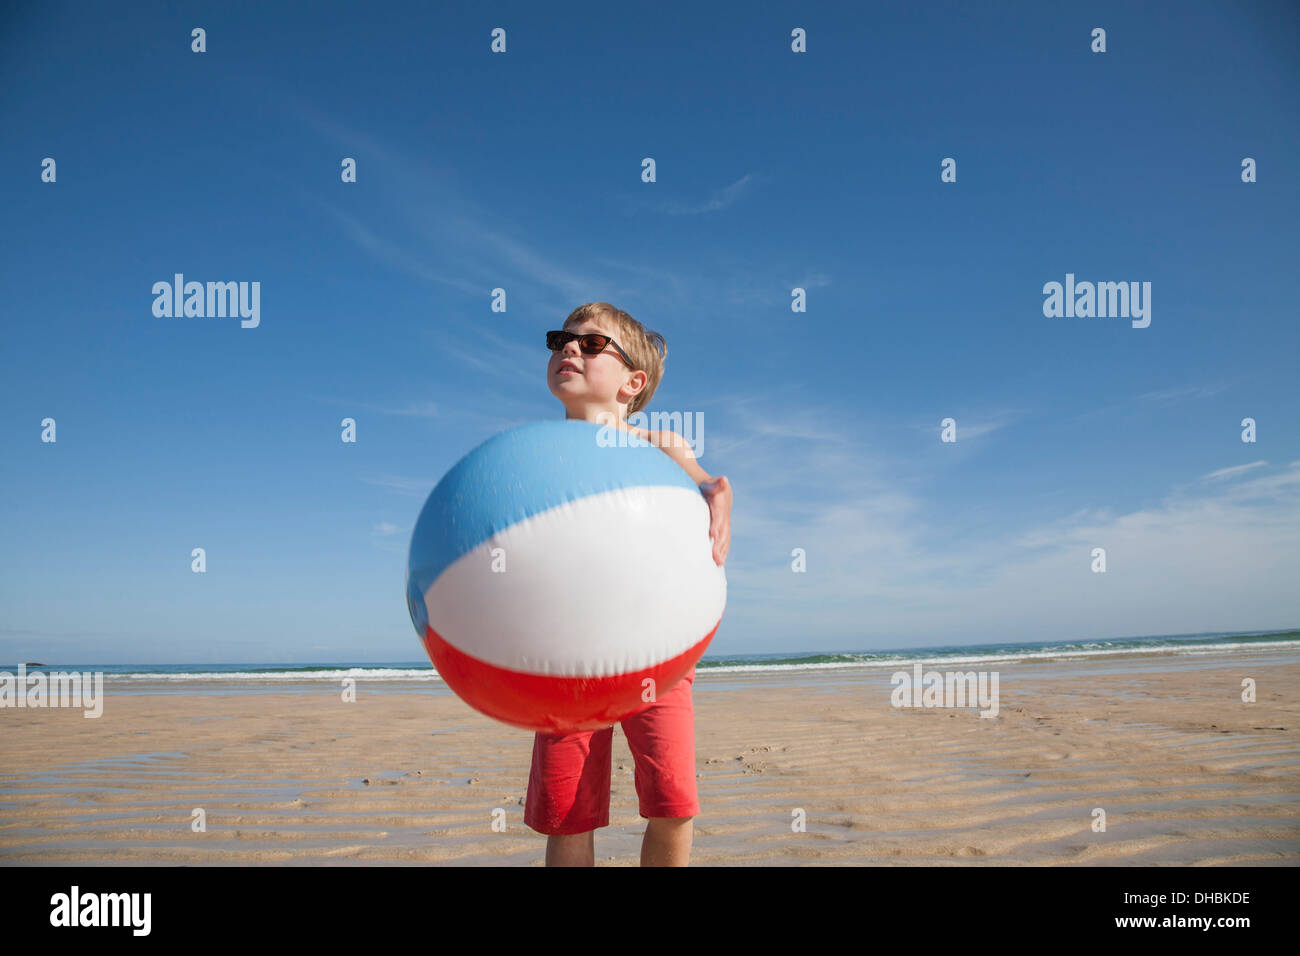 Pallone da spiaggia gigante Grande pallone da spiaggia pallone gonf